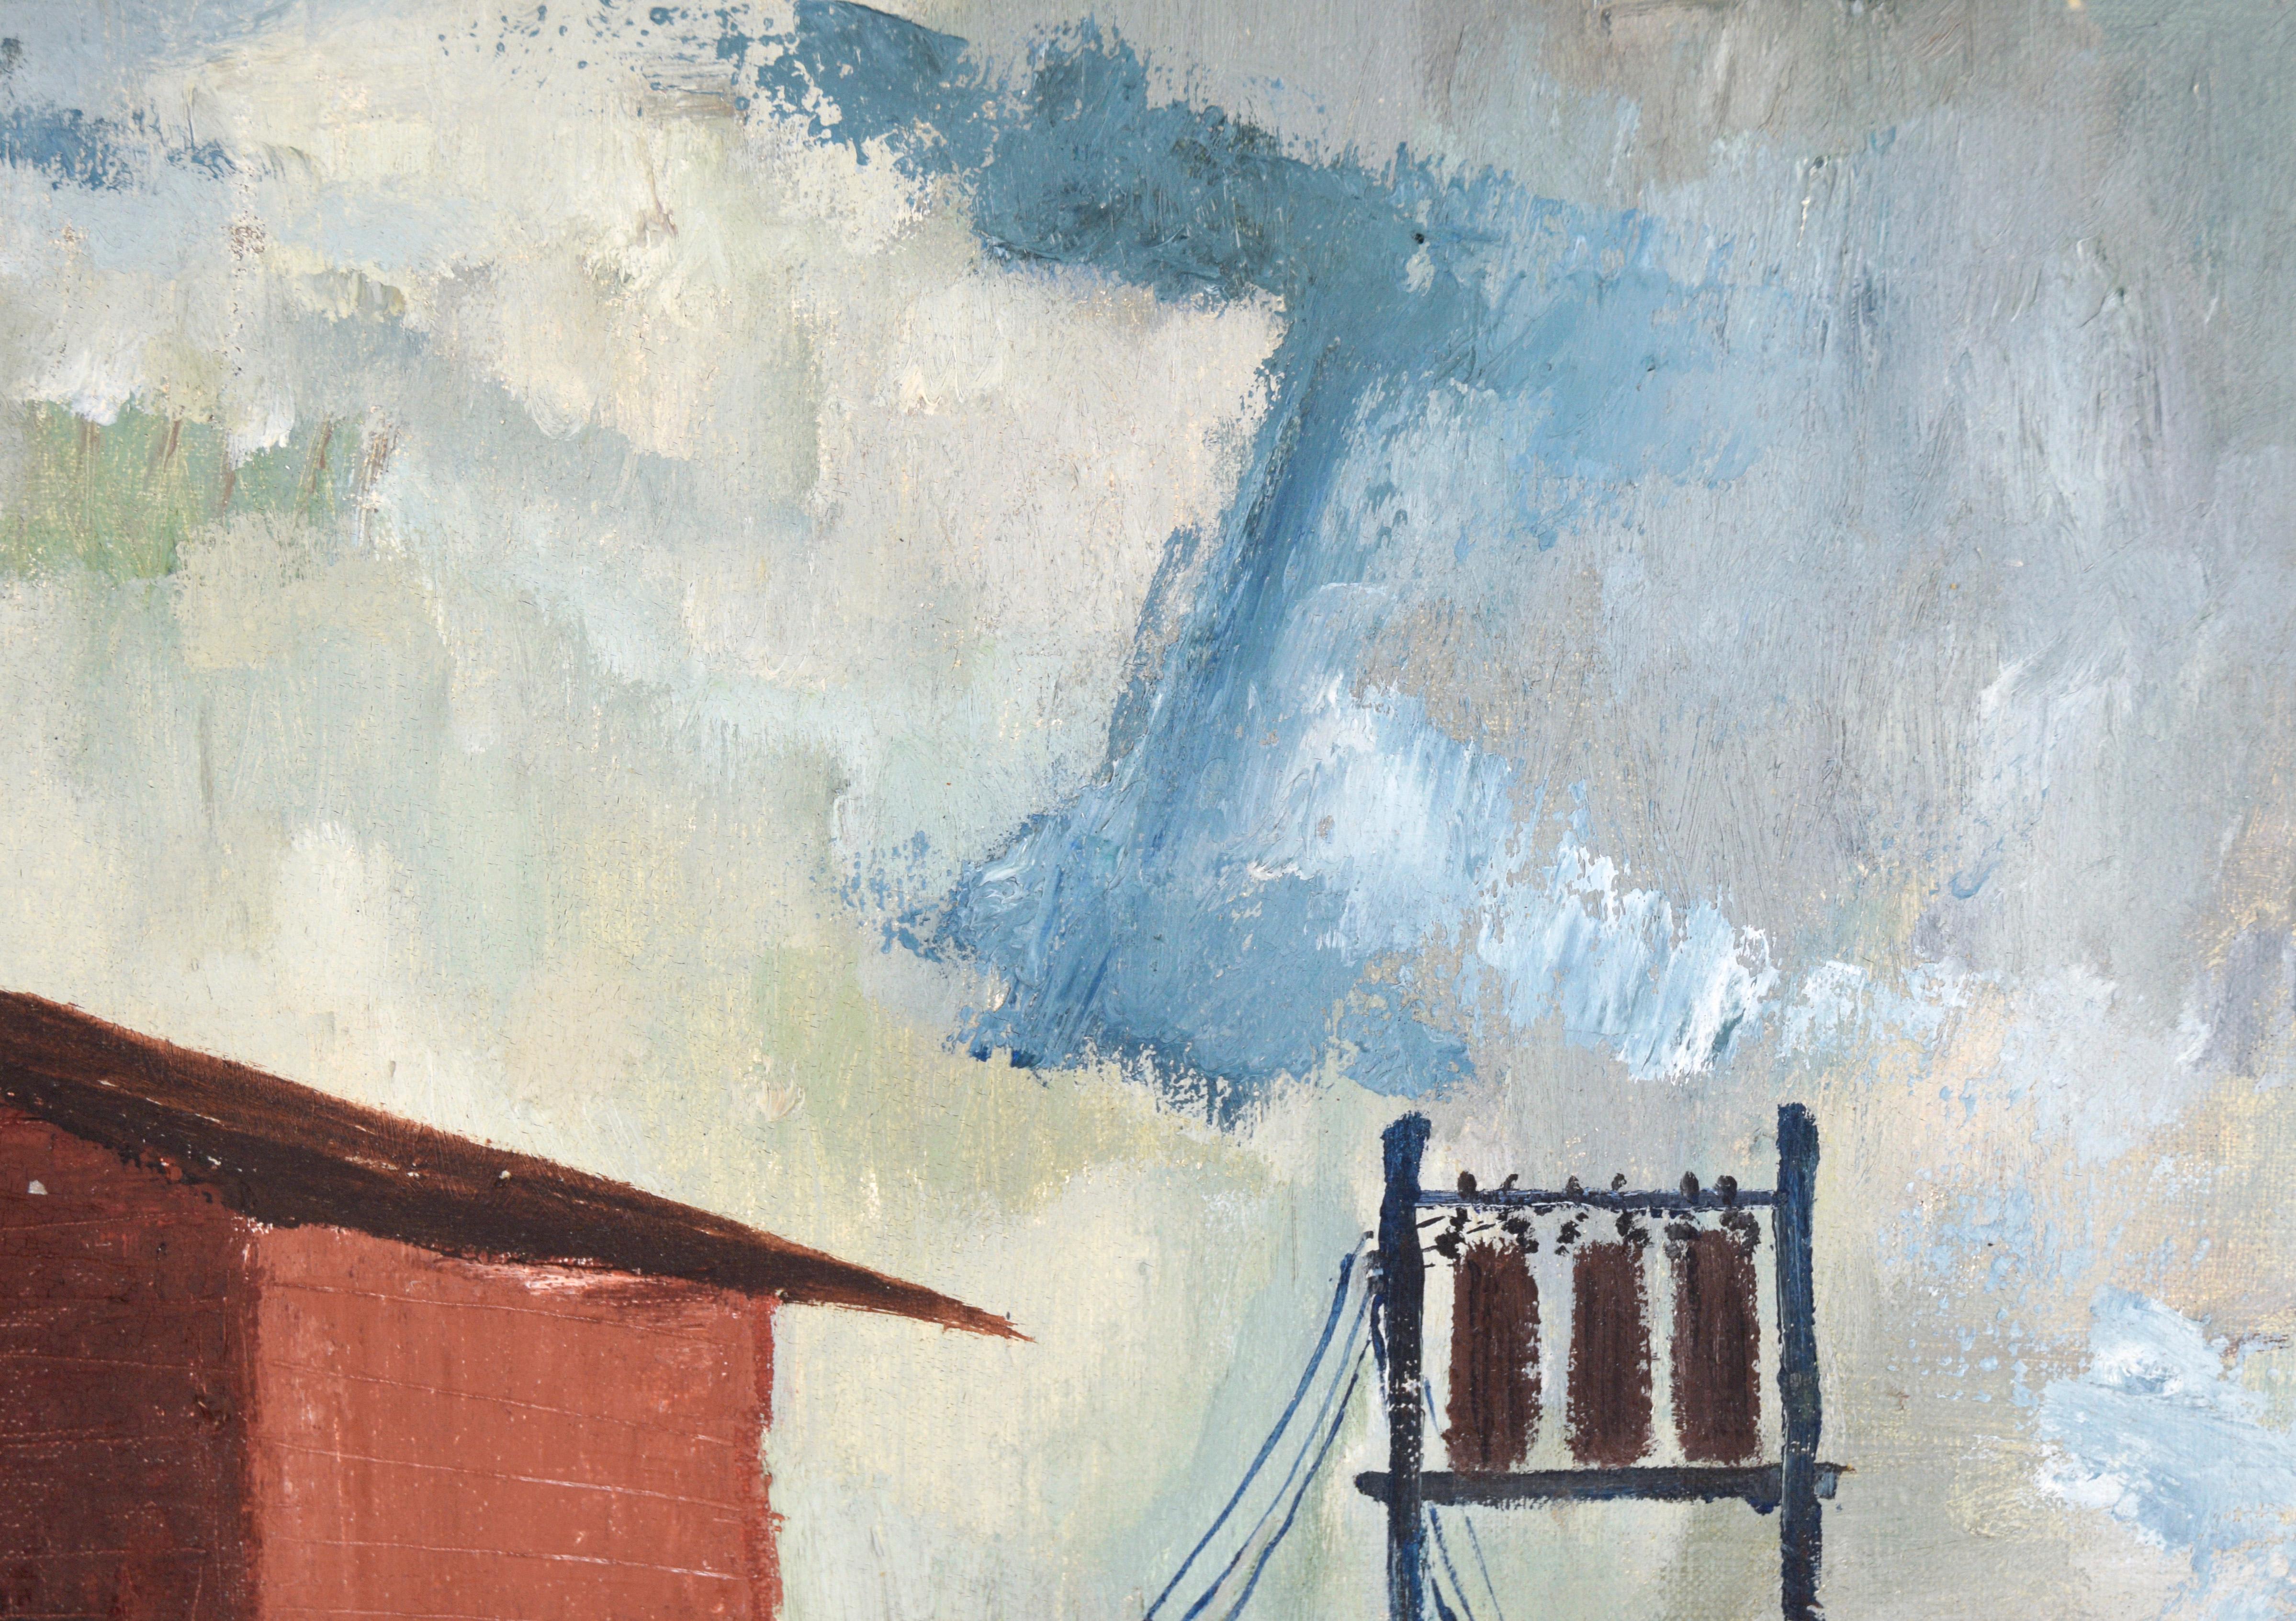 Paysage industriel avec rangées de maisons à l'huile sur lin - Impressionnisme américain Painting par Doris Lyons Hoover